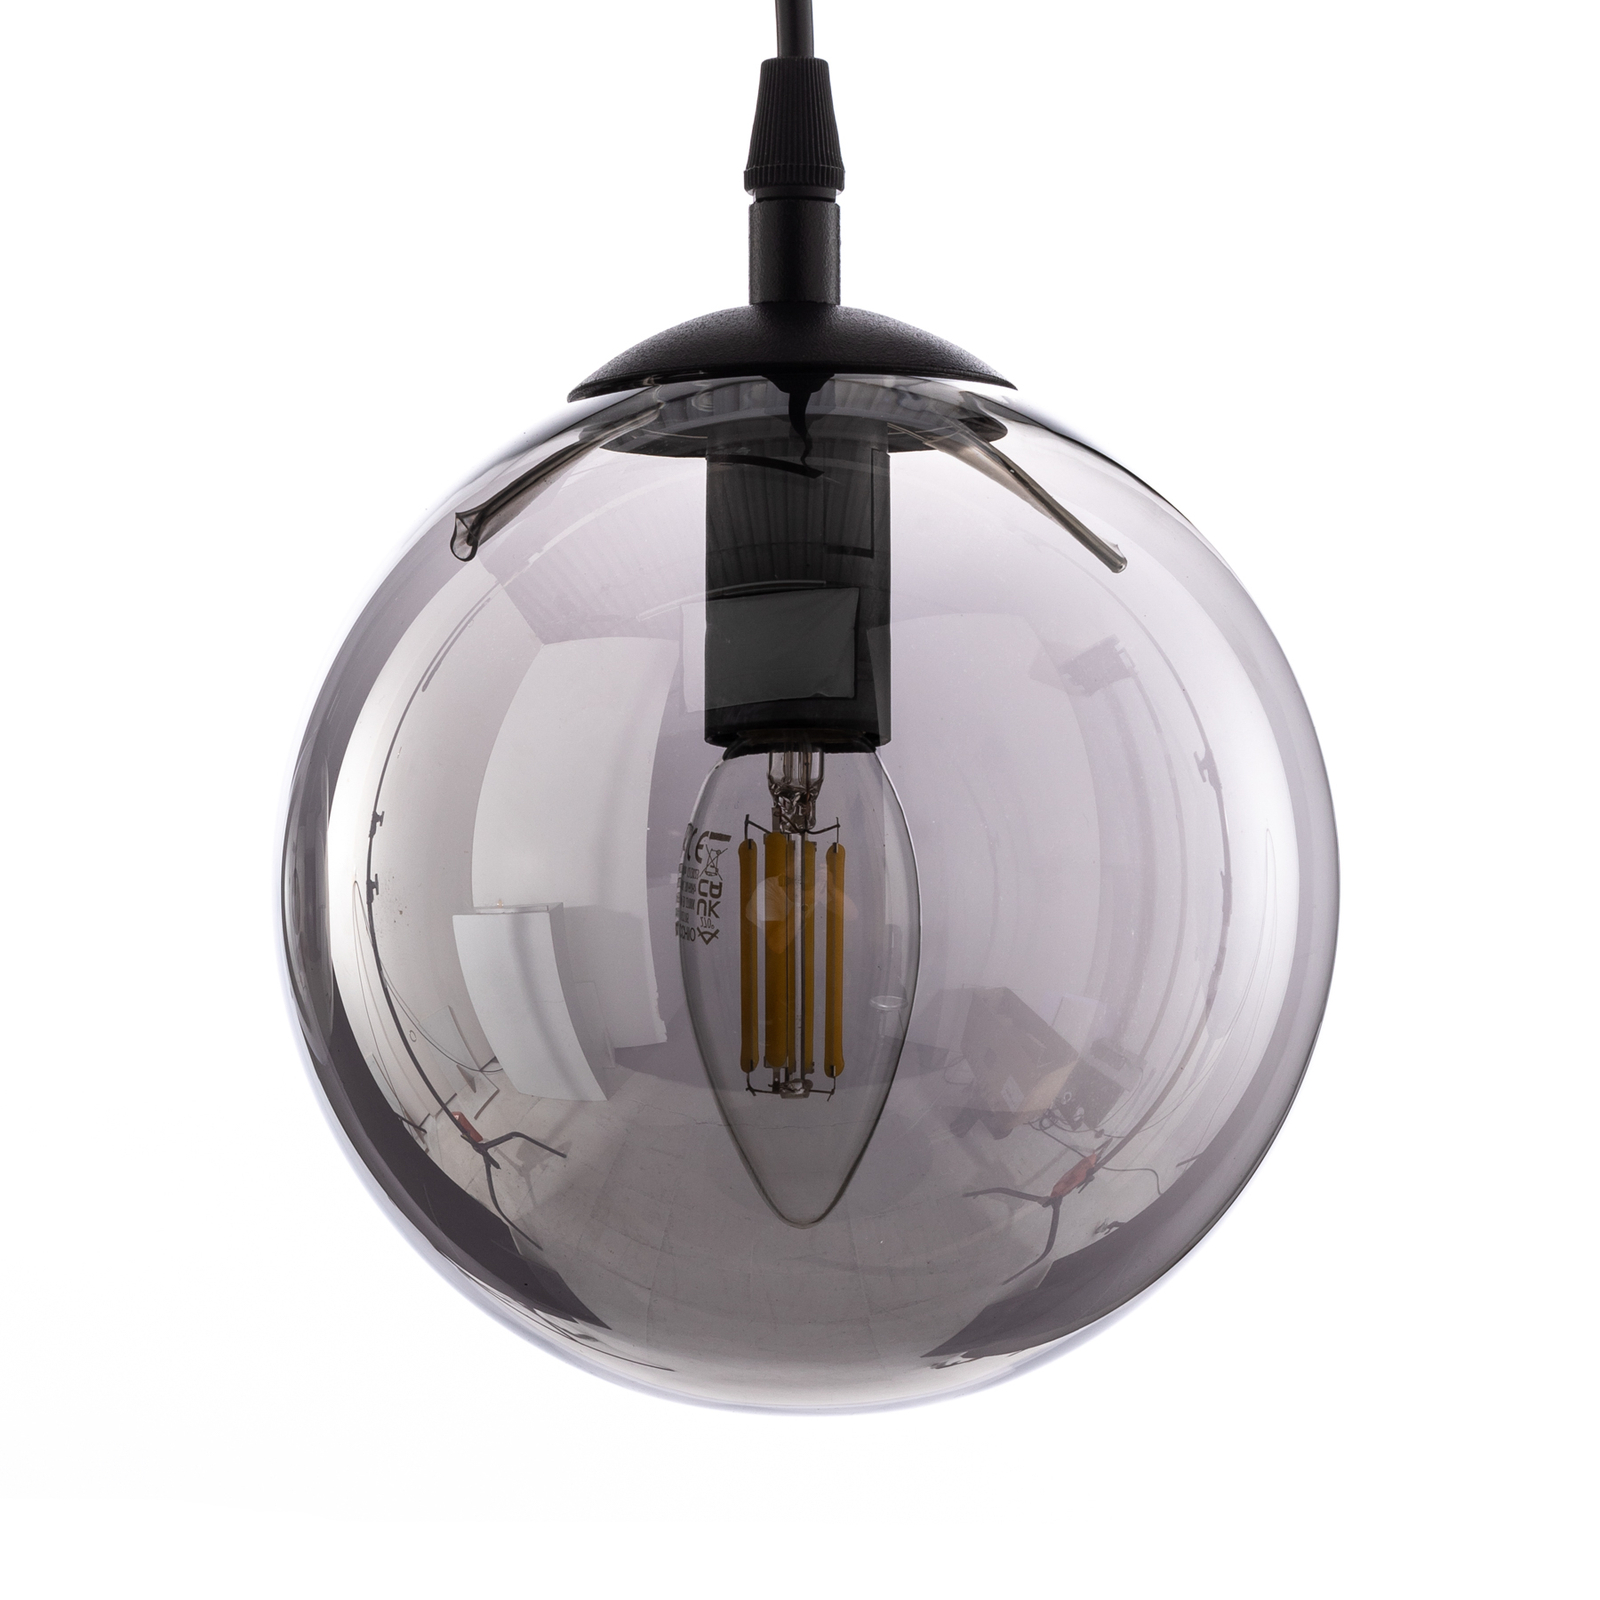 Staklena viseća svjetiljka, 3 žarulje, ravna, crna, grafit, staklo